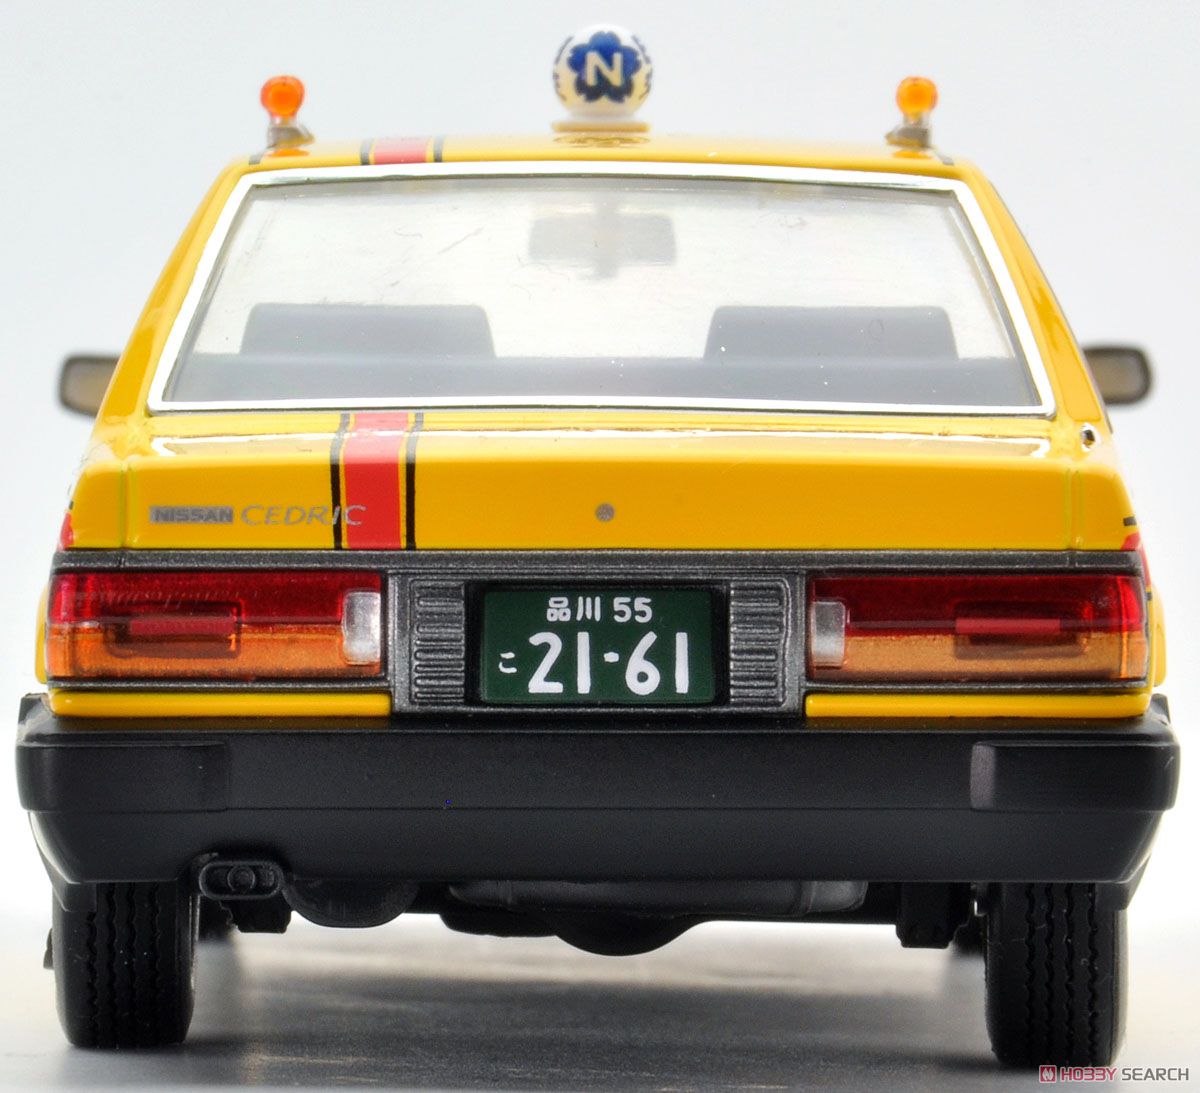 LV-N43-13b 日産セドリック タクシー(日本交通) (ミニカー) 商品画像4